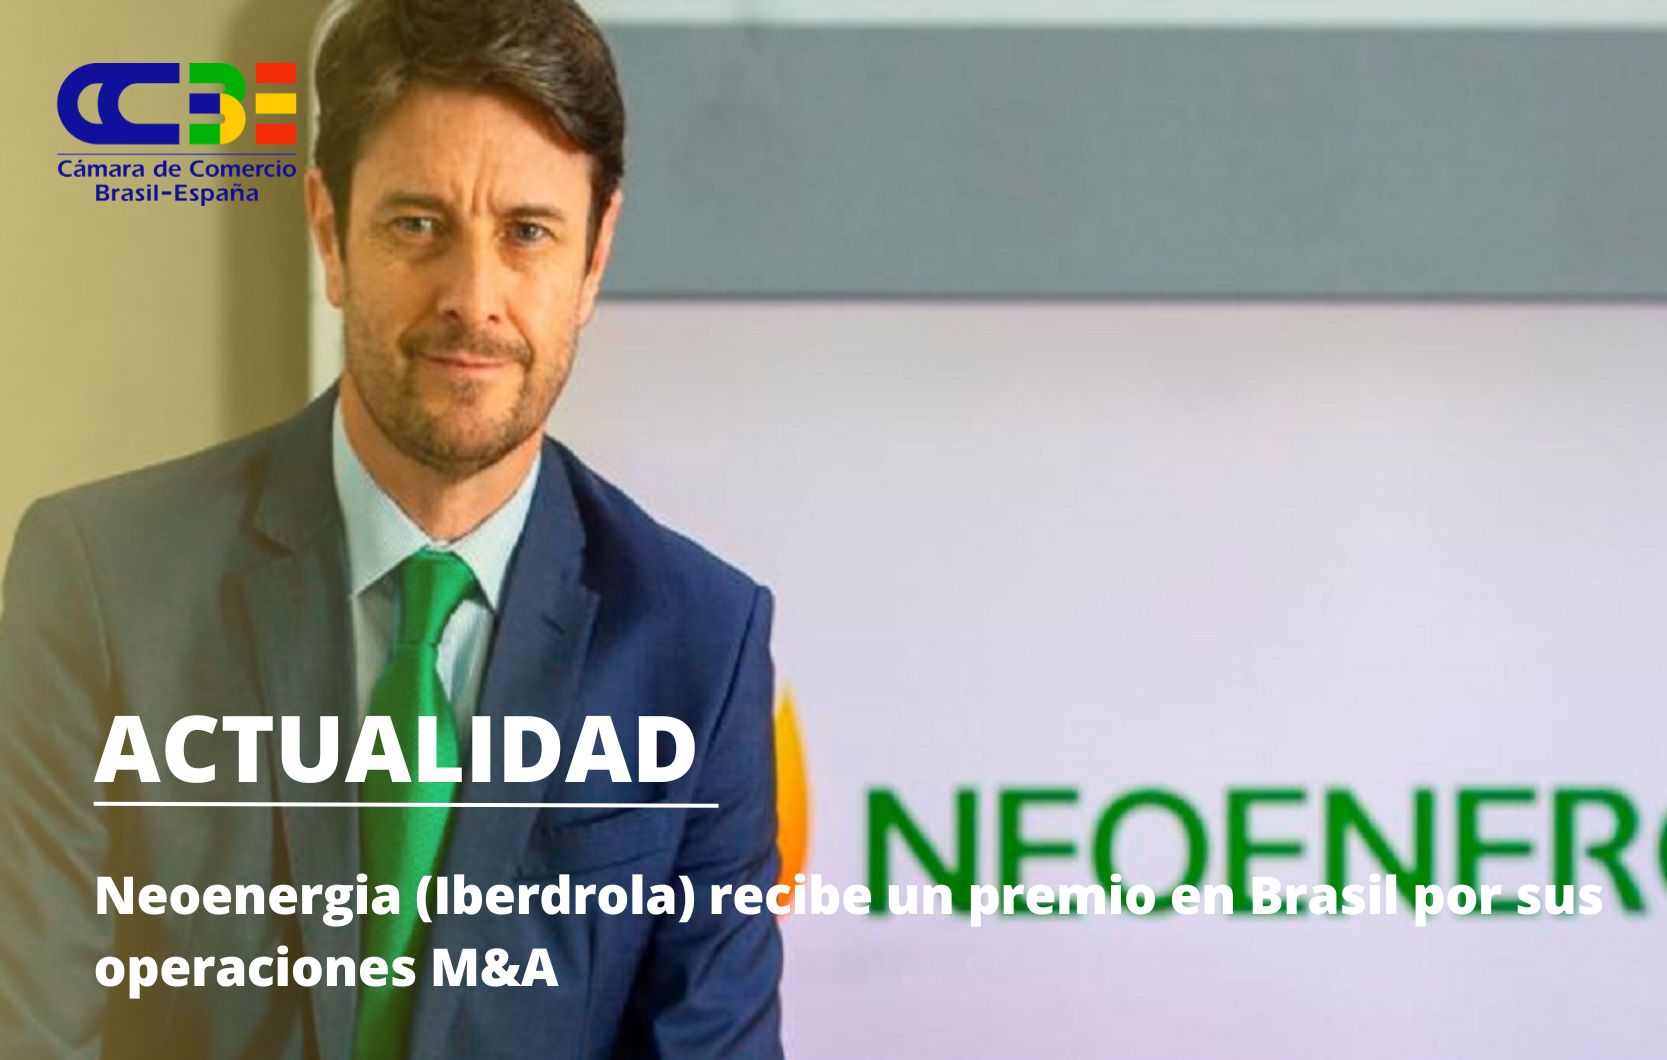 Neoenergia (Iberdrola) recibe un premio en Brasil por sus operaciones M&A